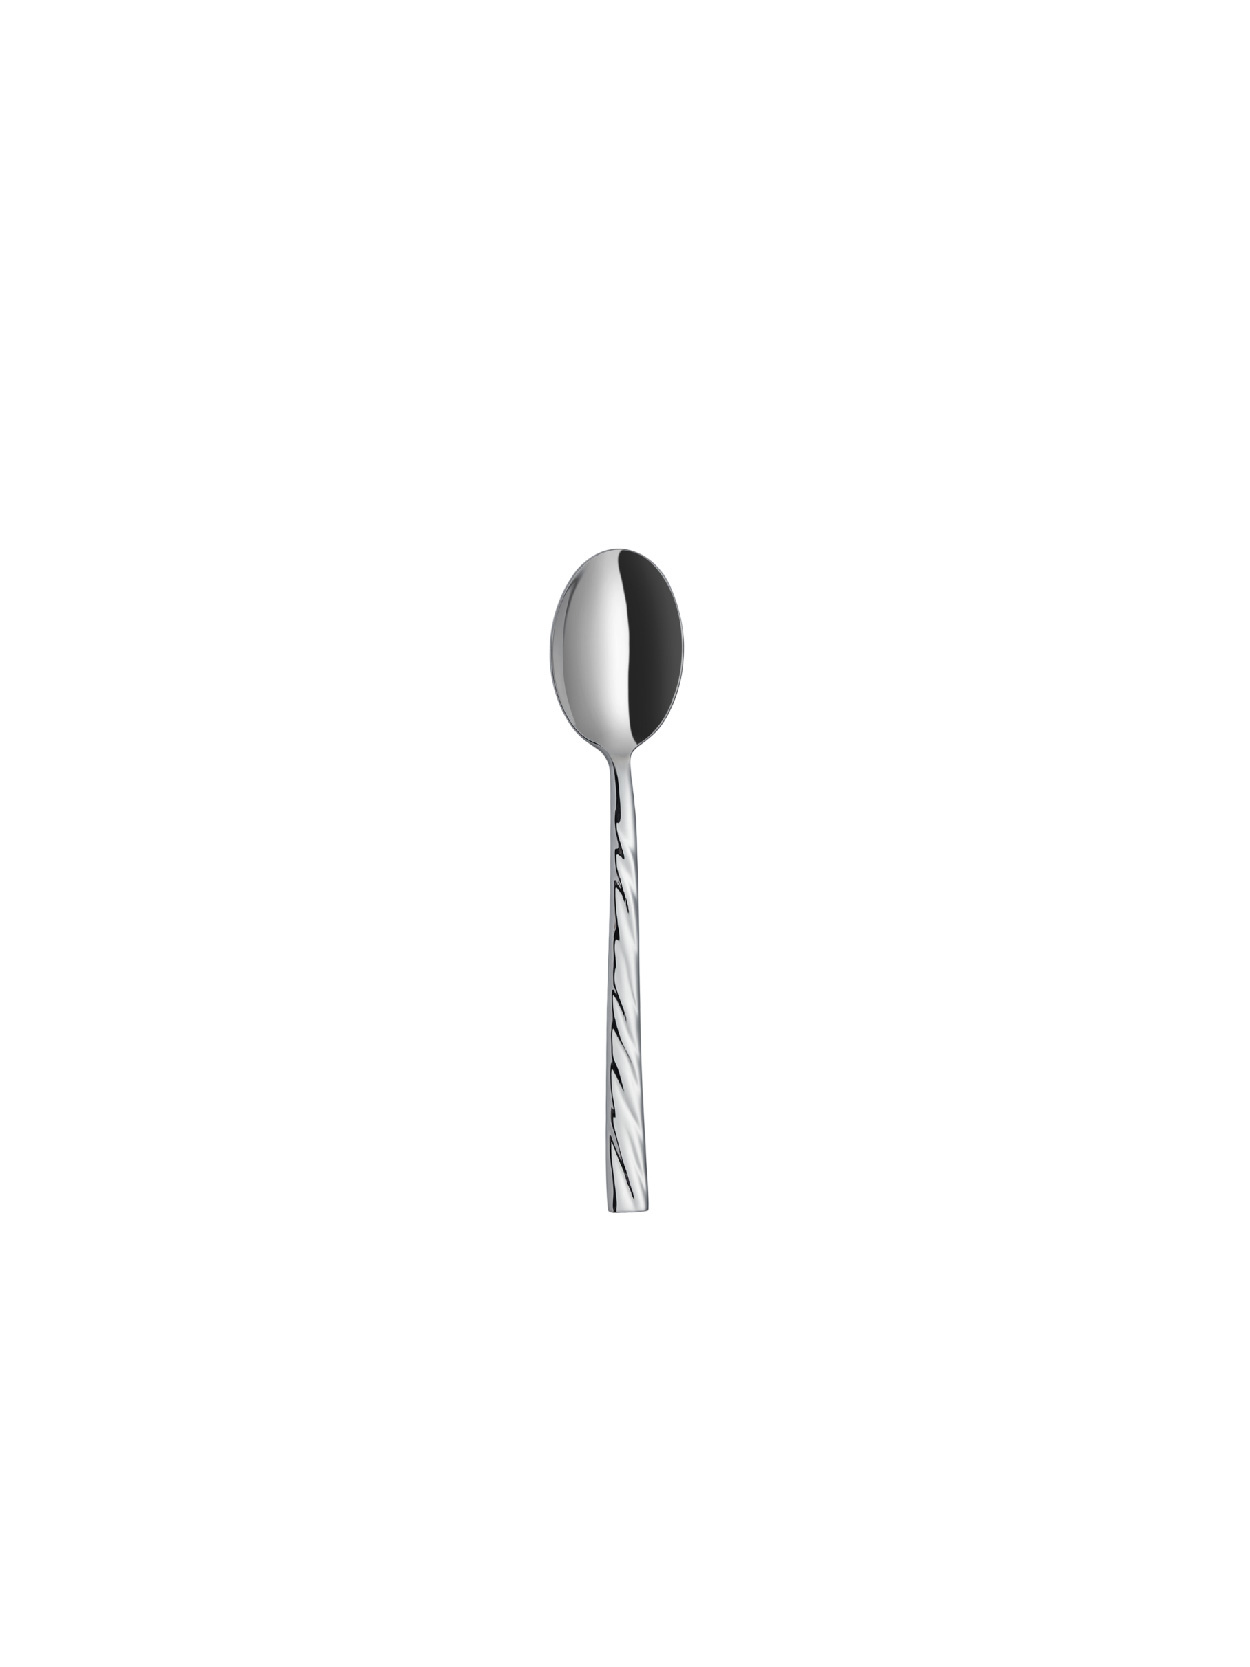 Vega - Plain - Tea Spoon (6 Pcs)